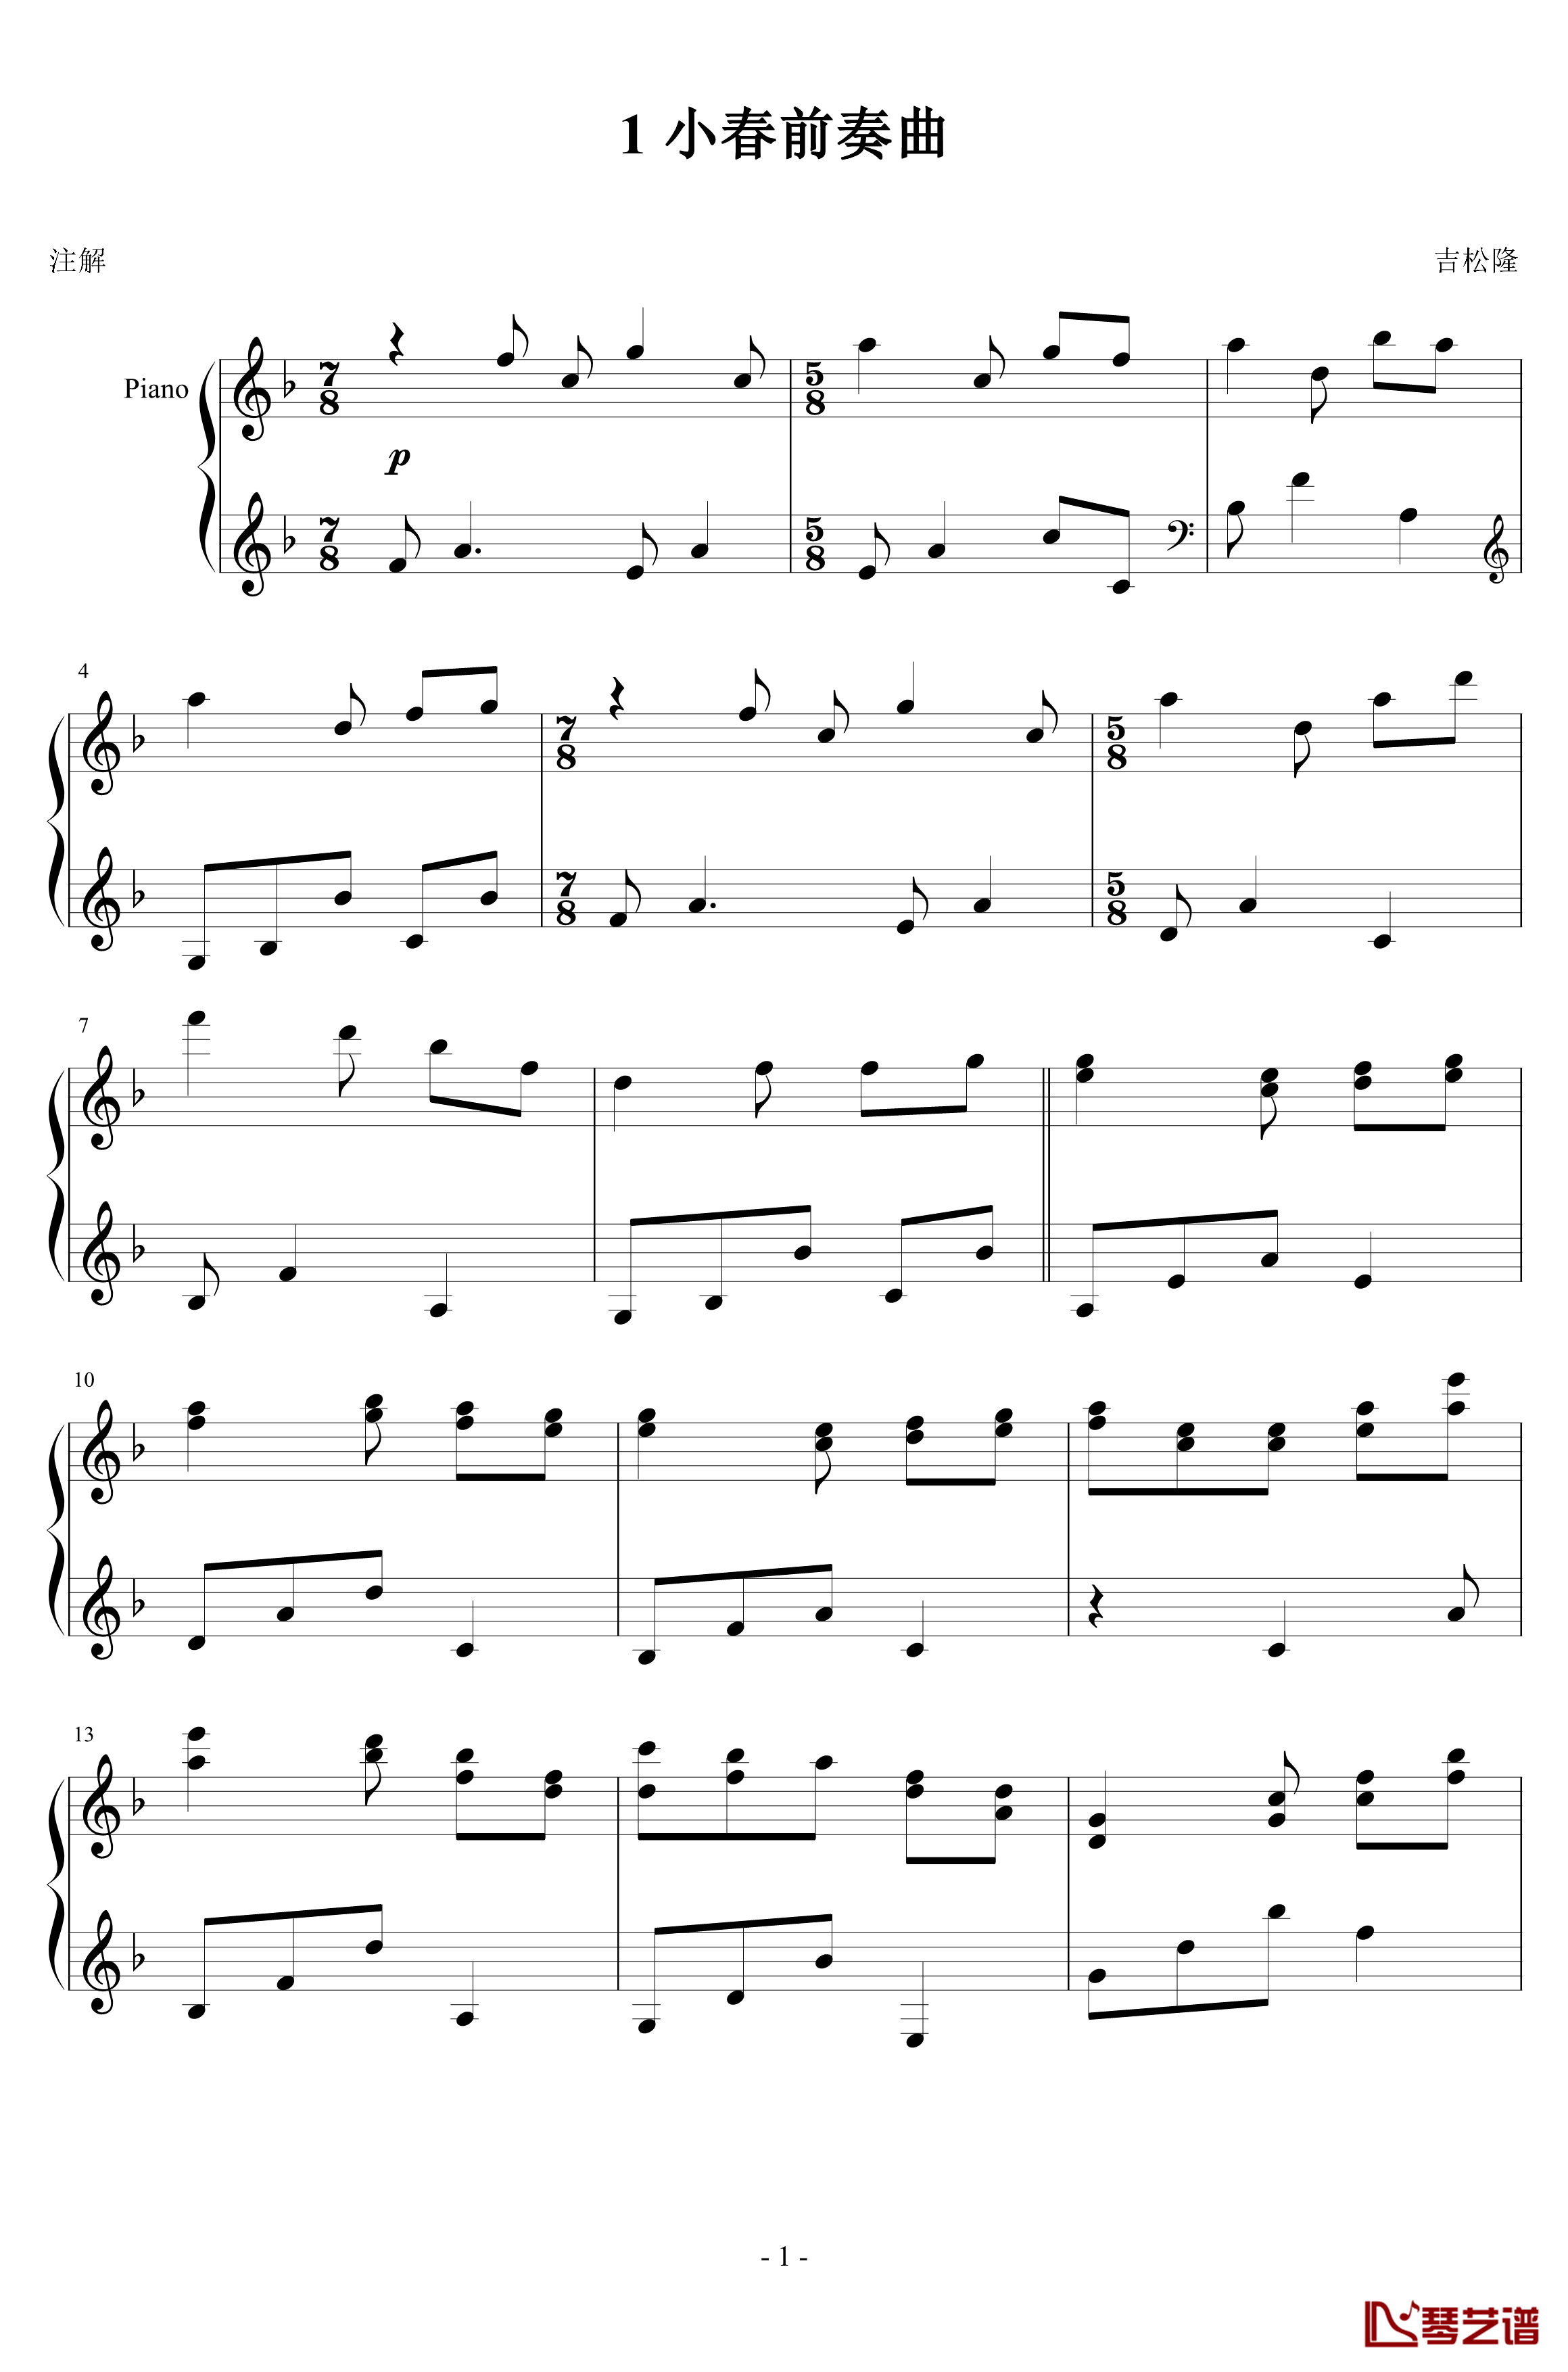 1 小春天气钢琴谱-吉松隆1